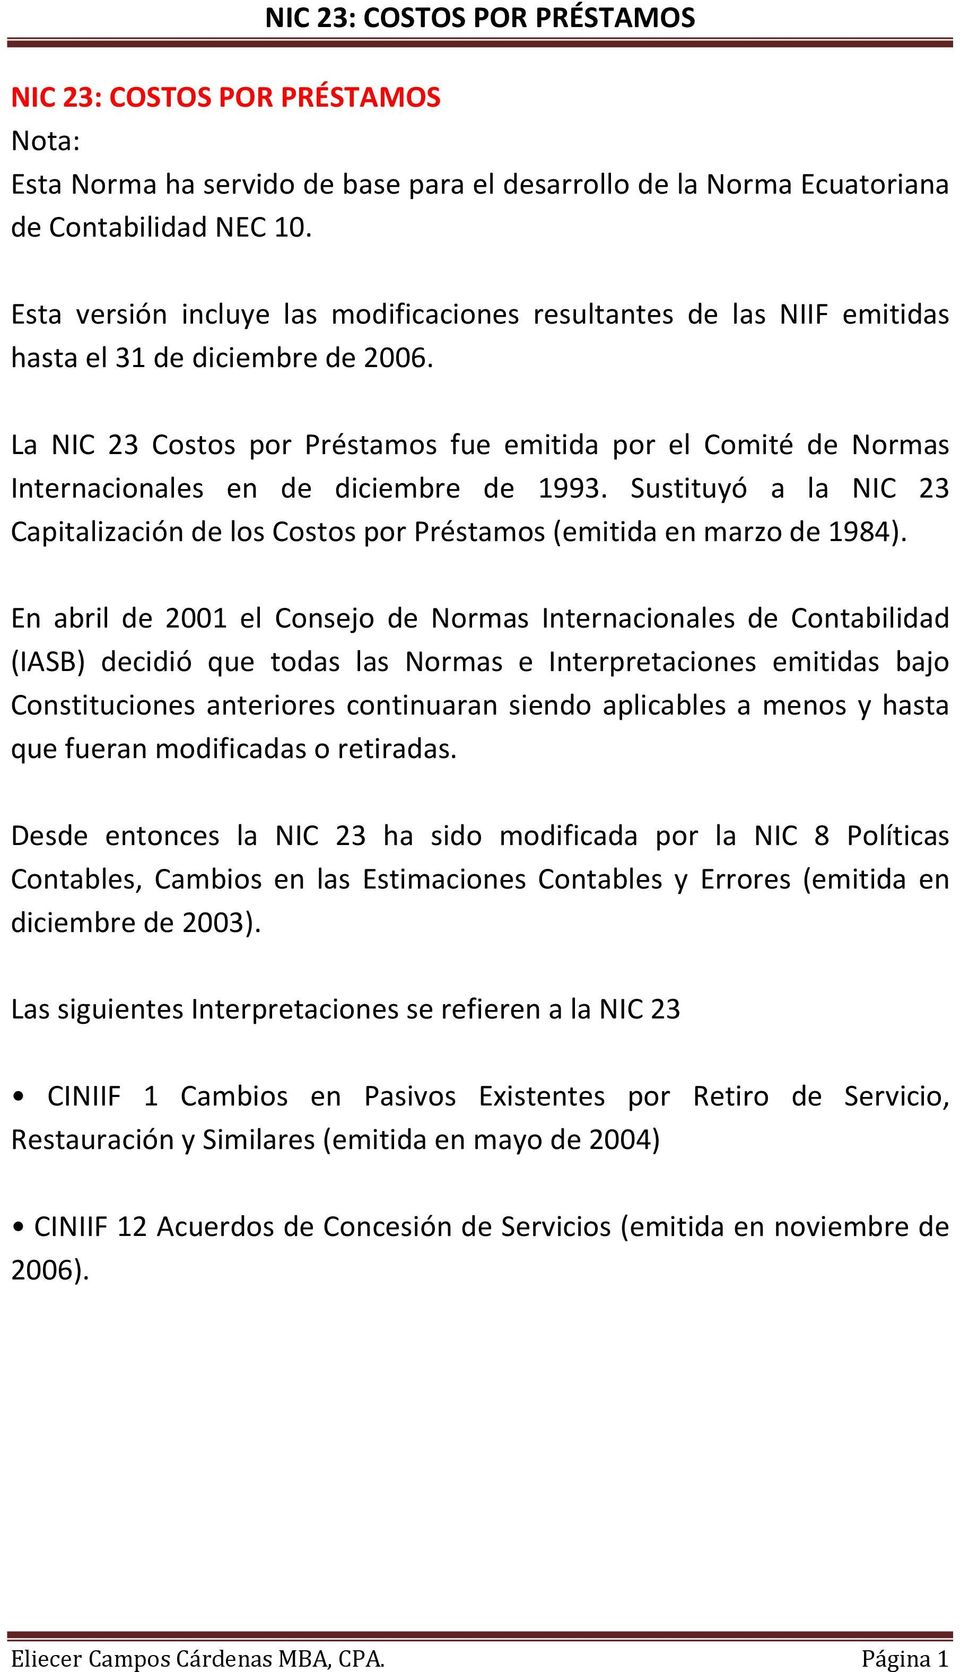 La NIC 23 Costos por Préstamos fue emitida por el Comité de Normas Internacionales en de diciembre de 1993. Sustituyó a la NIC 23 Capitalización de los Costos por Préstamos (emitida en marzo de 1984).